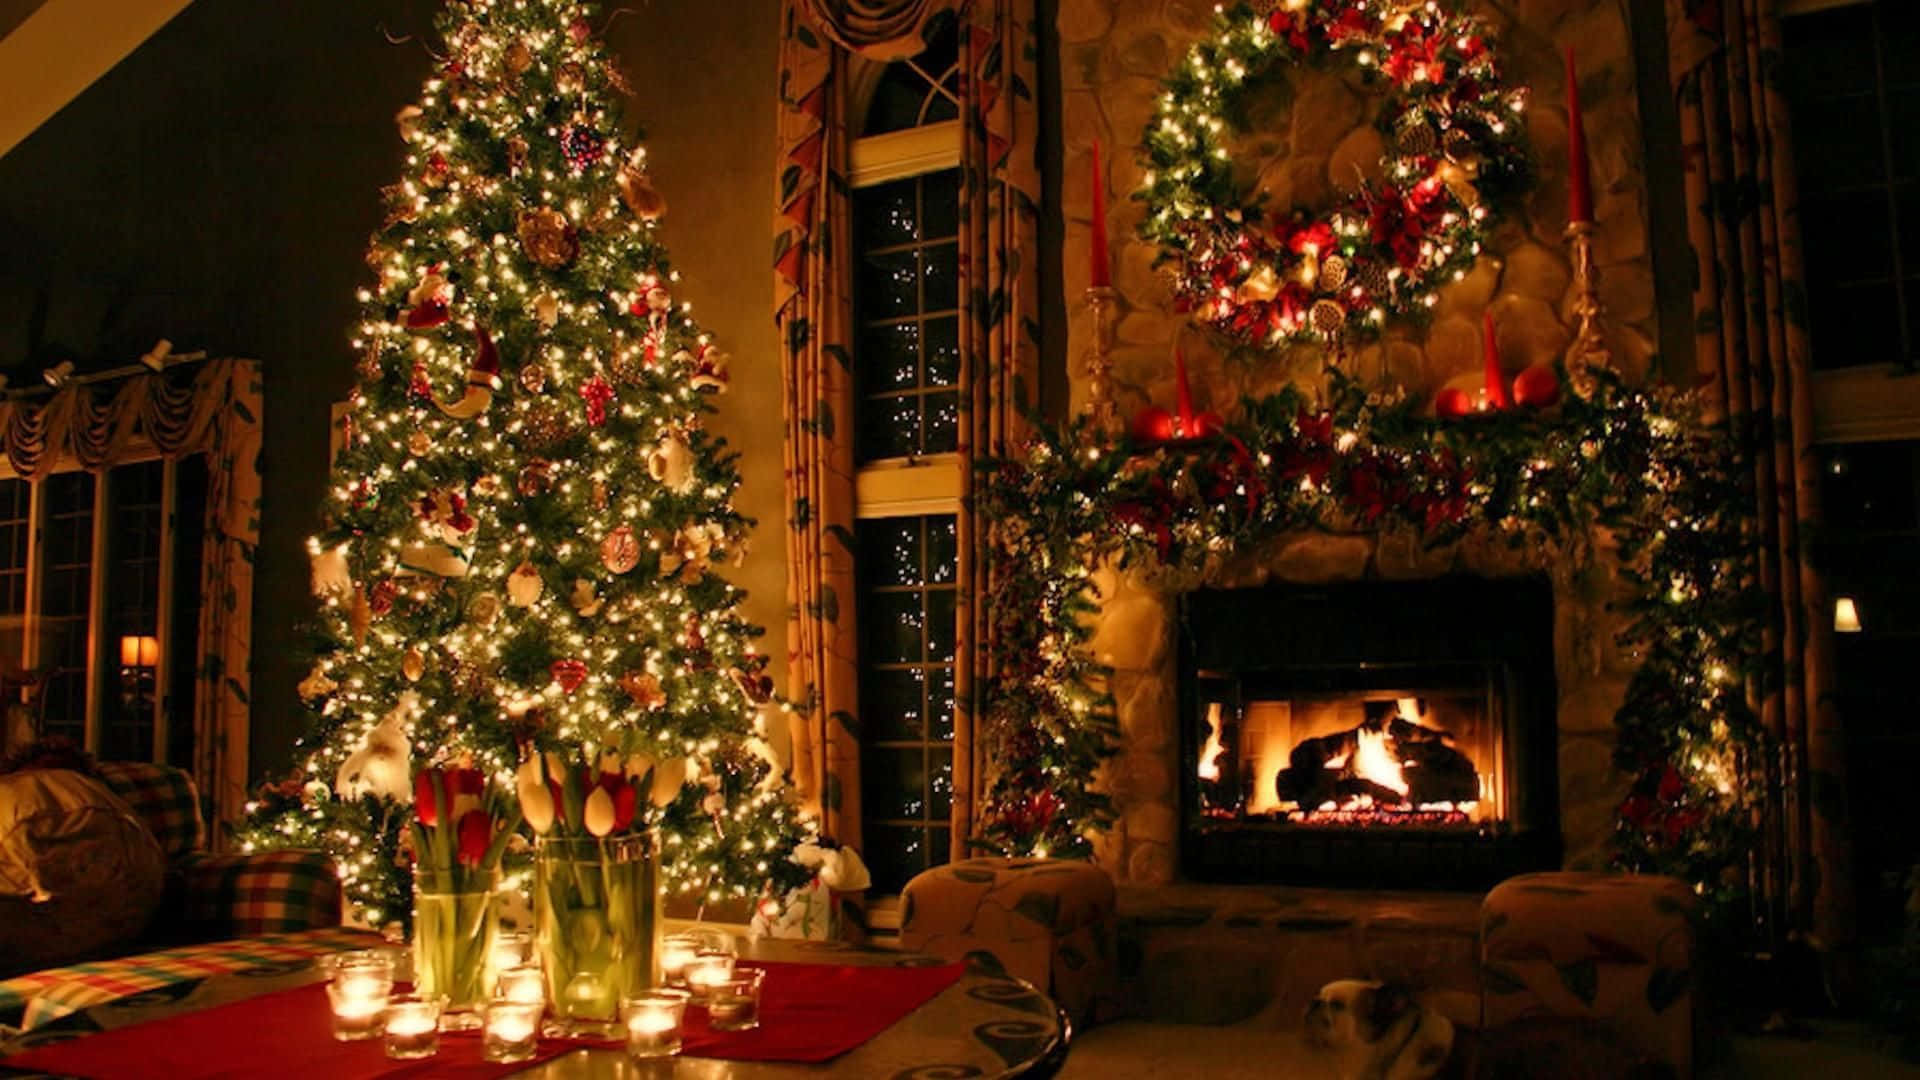 Weihnachtsbaumim Wohnzimmer Mit Kerzen Und Einem Kamin Wallpaper